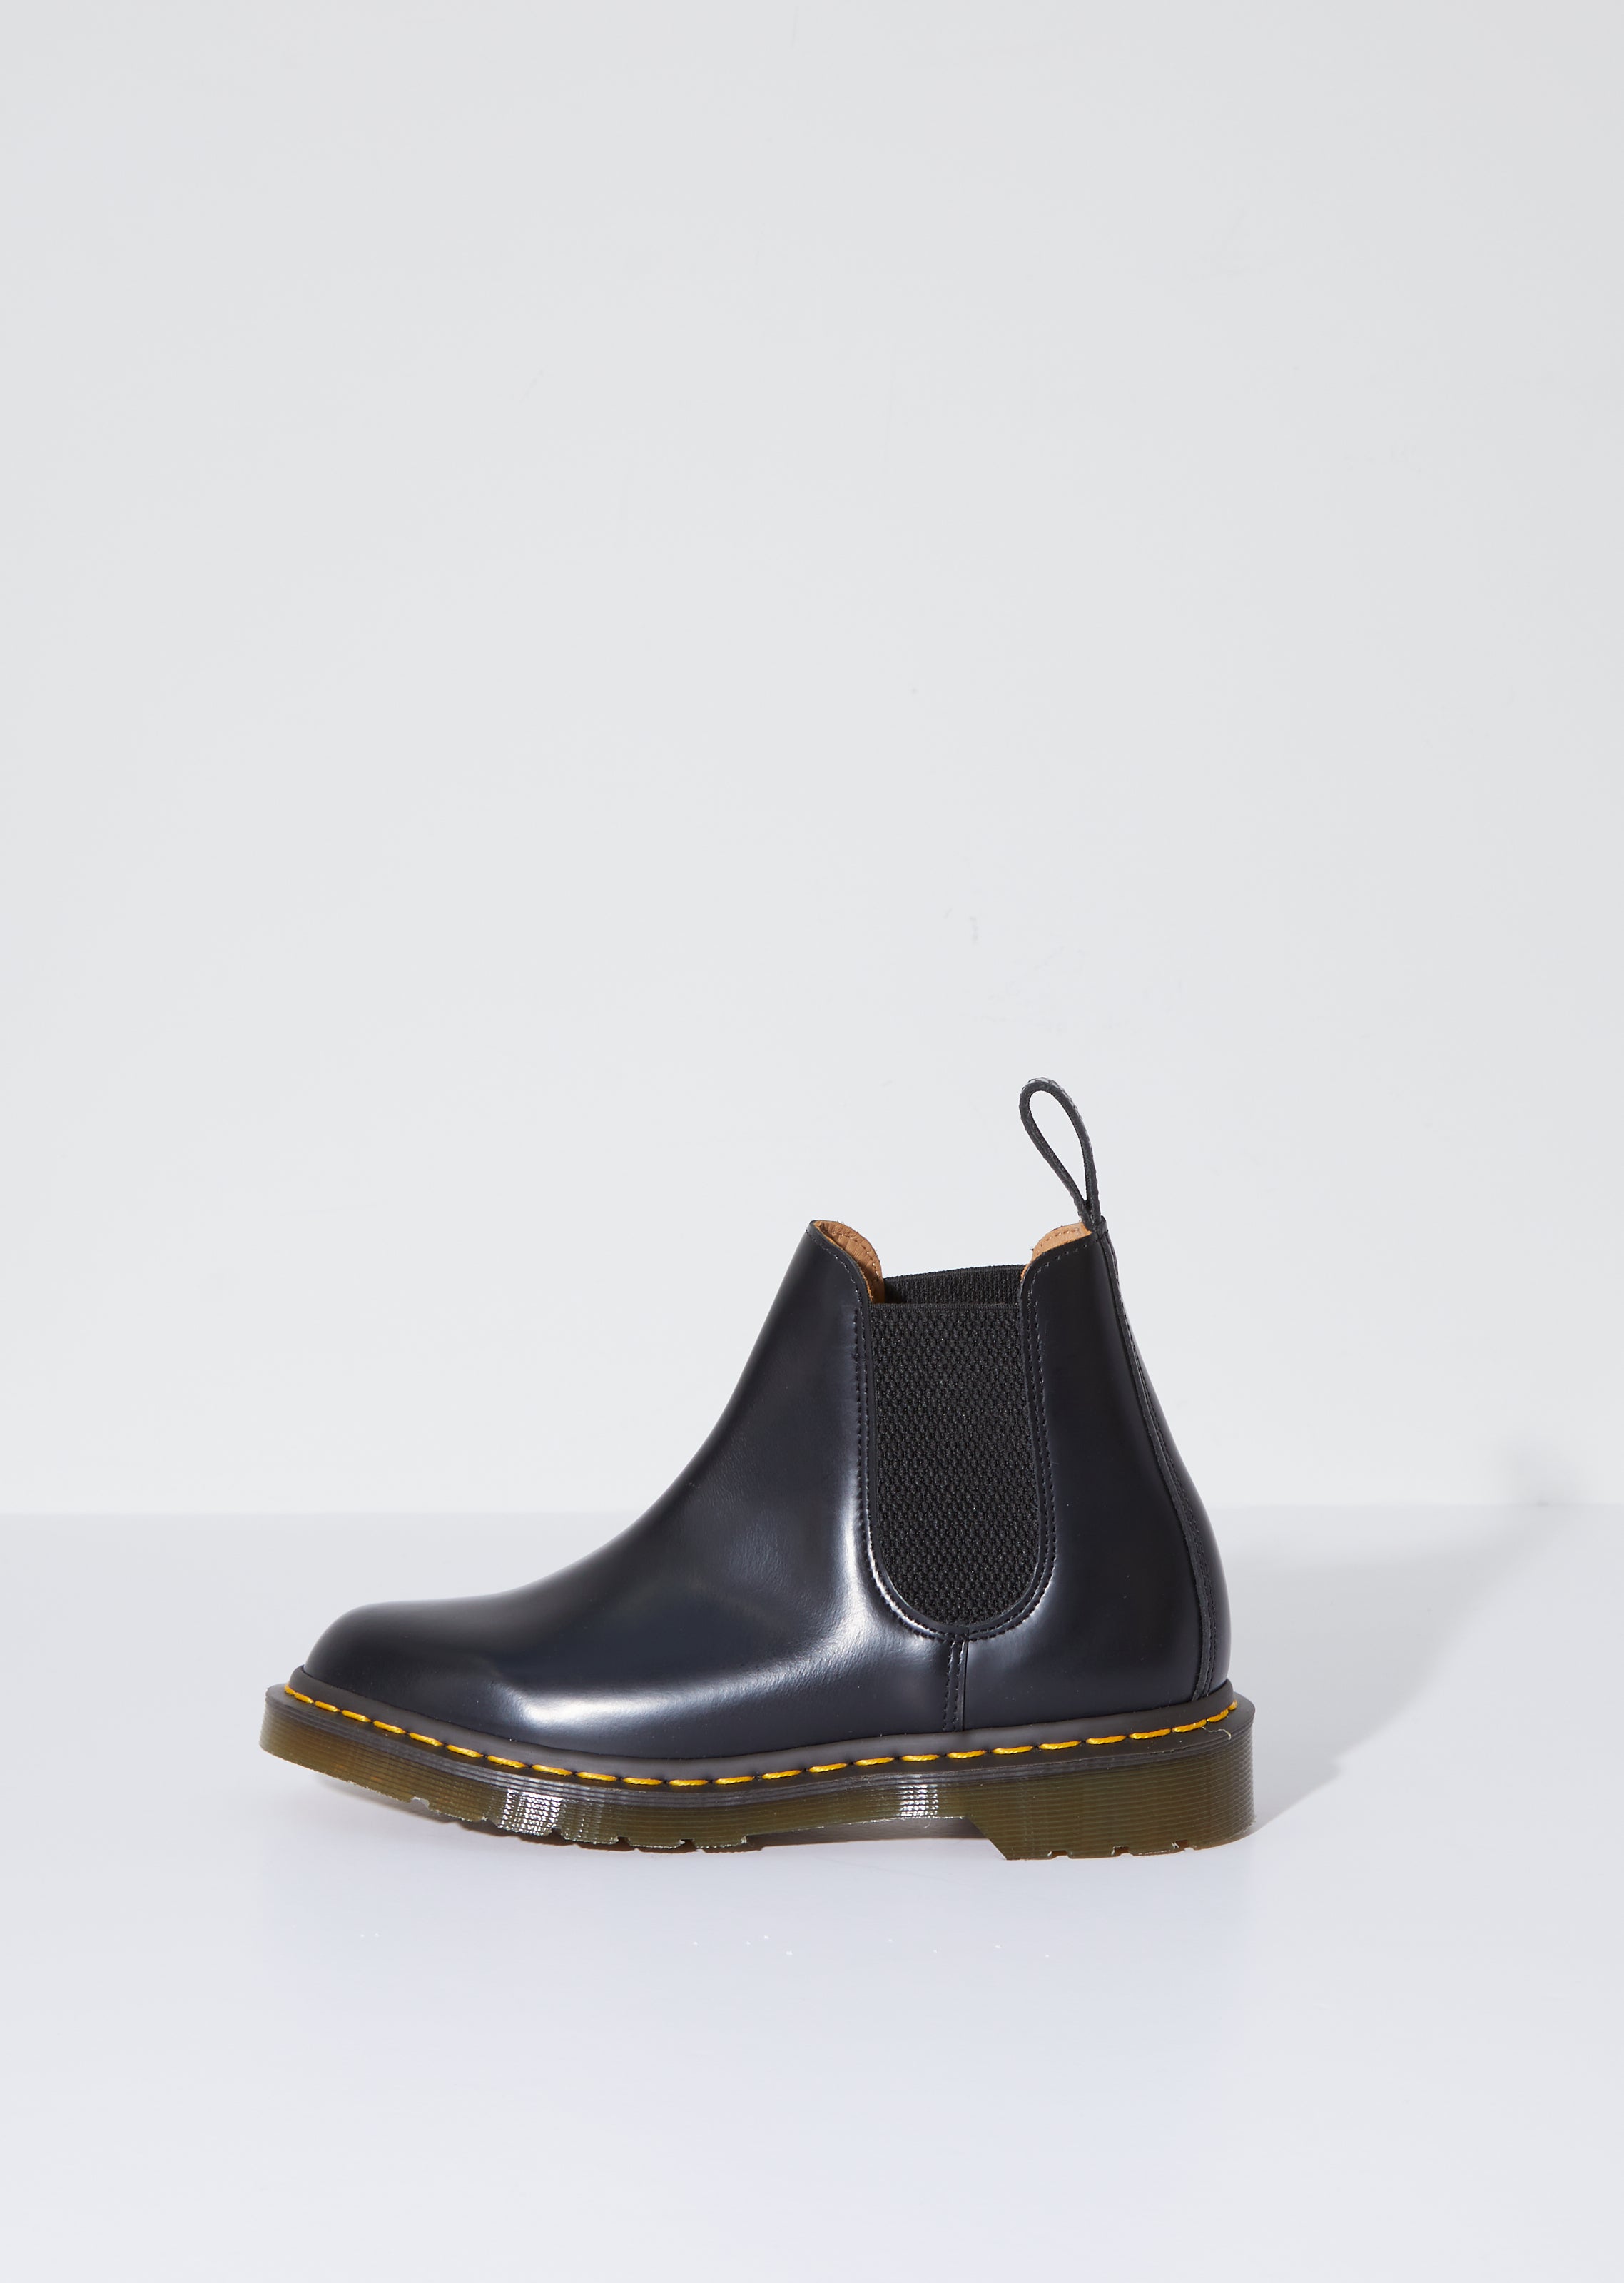 Comme des Garçons x Dr. Martens Smooth Leather Boot – La Garçonne